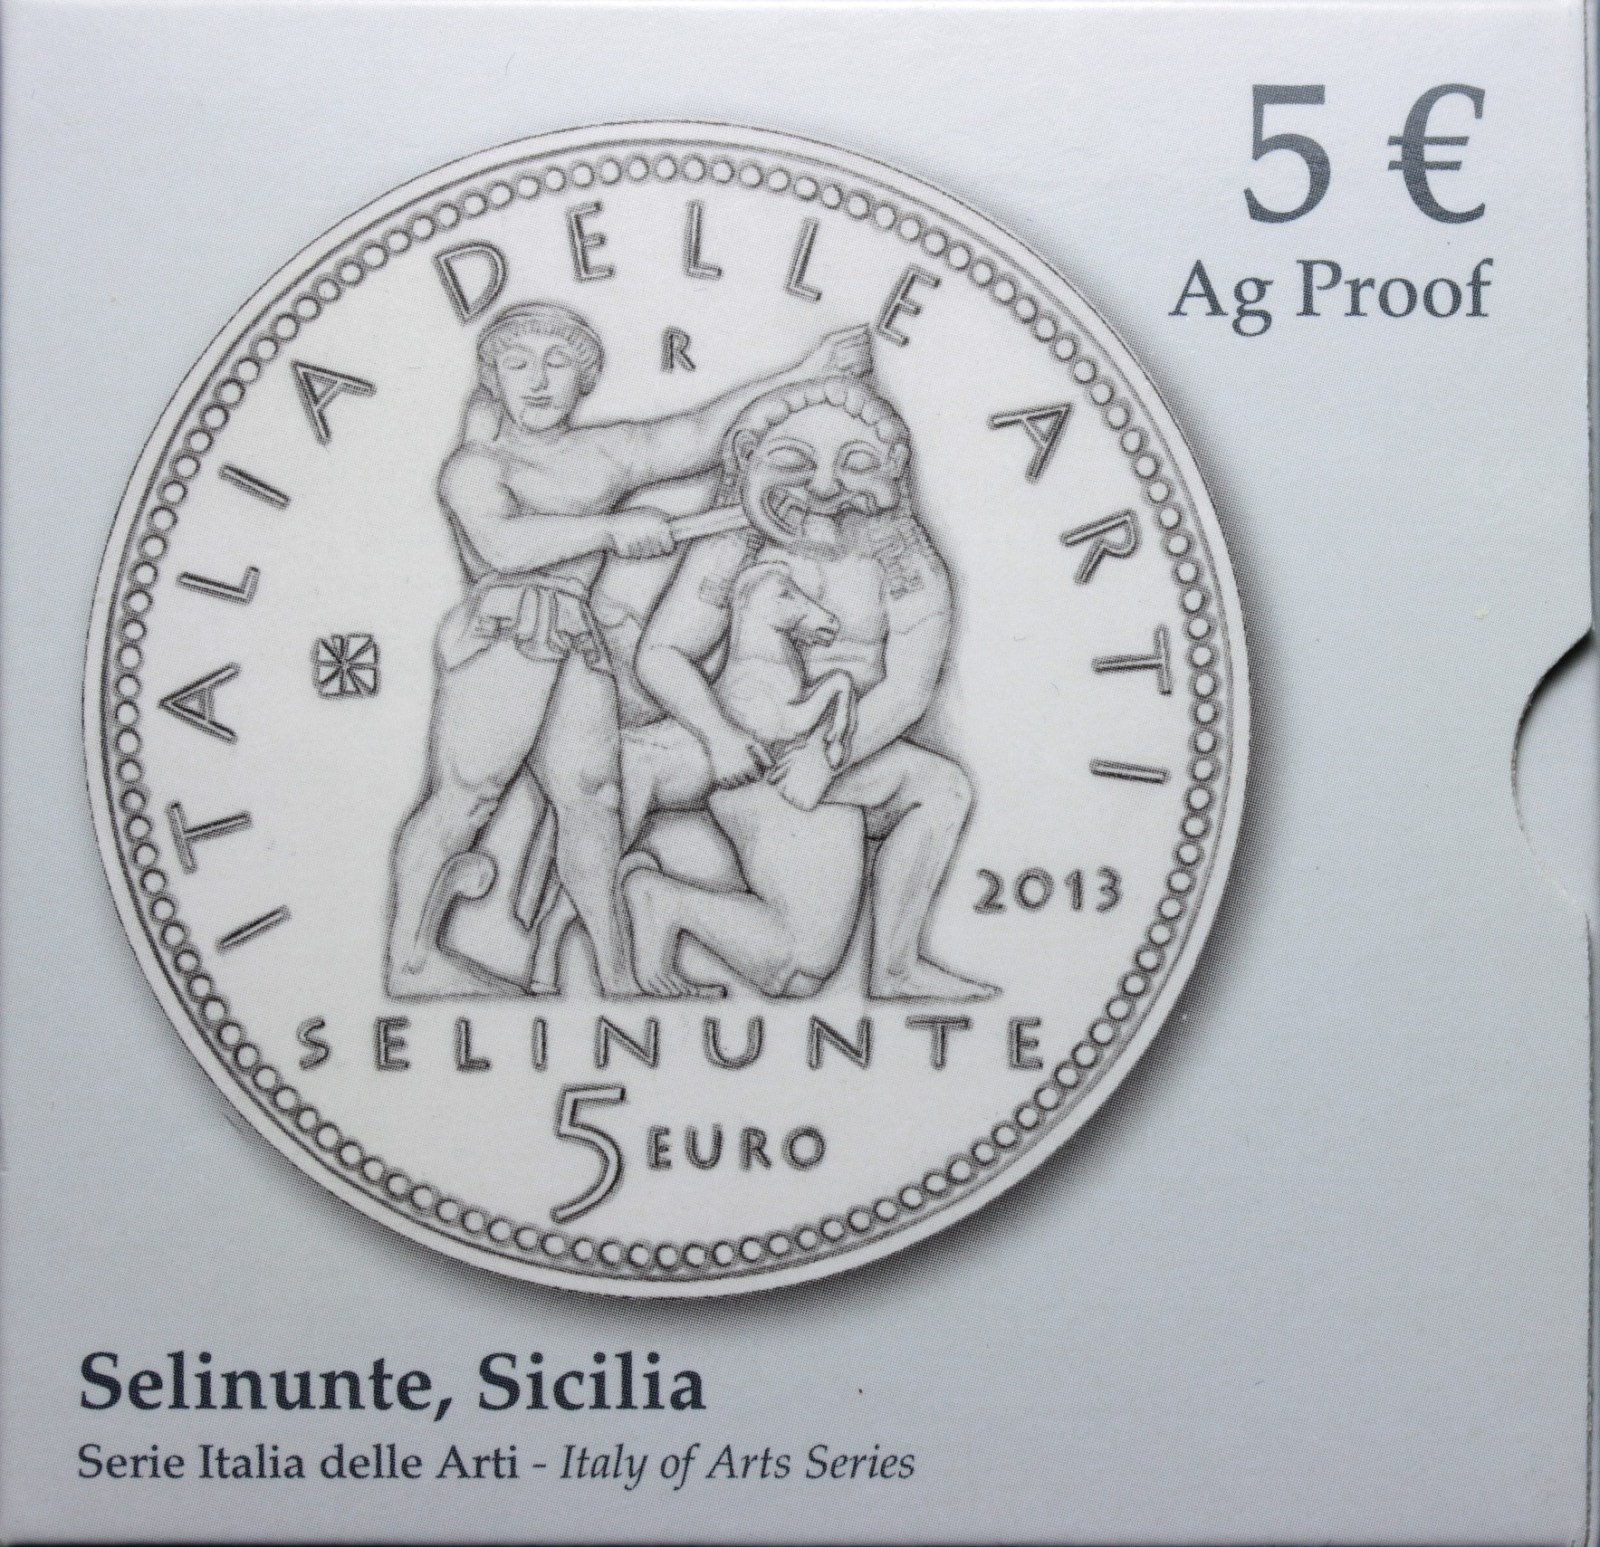 ITALIA 5 EURO COMMEMORATIVO 2013 PROOF SICILIA SELINUNTE SCATOLA E GARANZIA